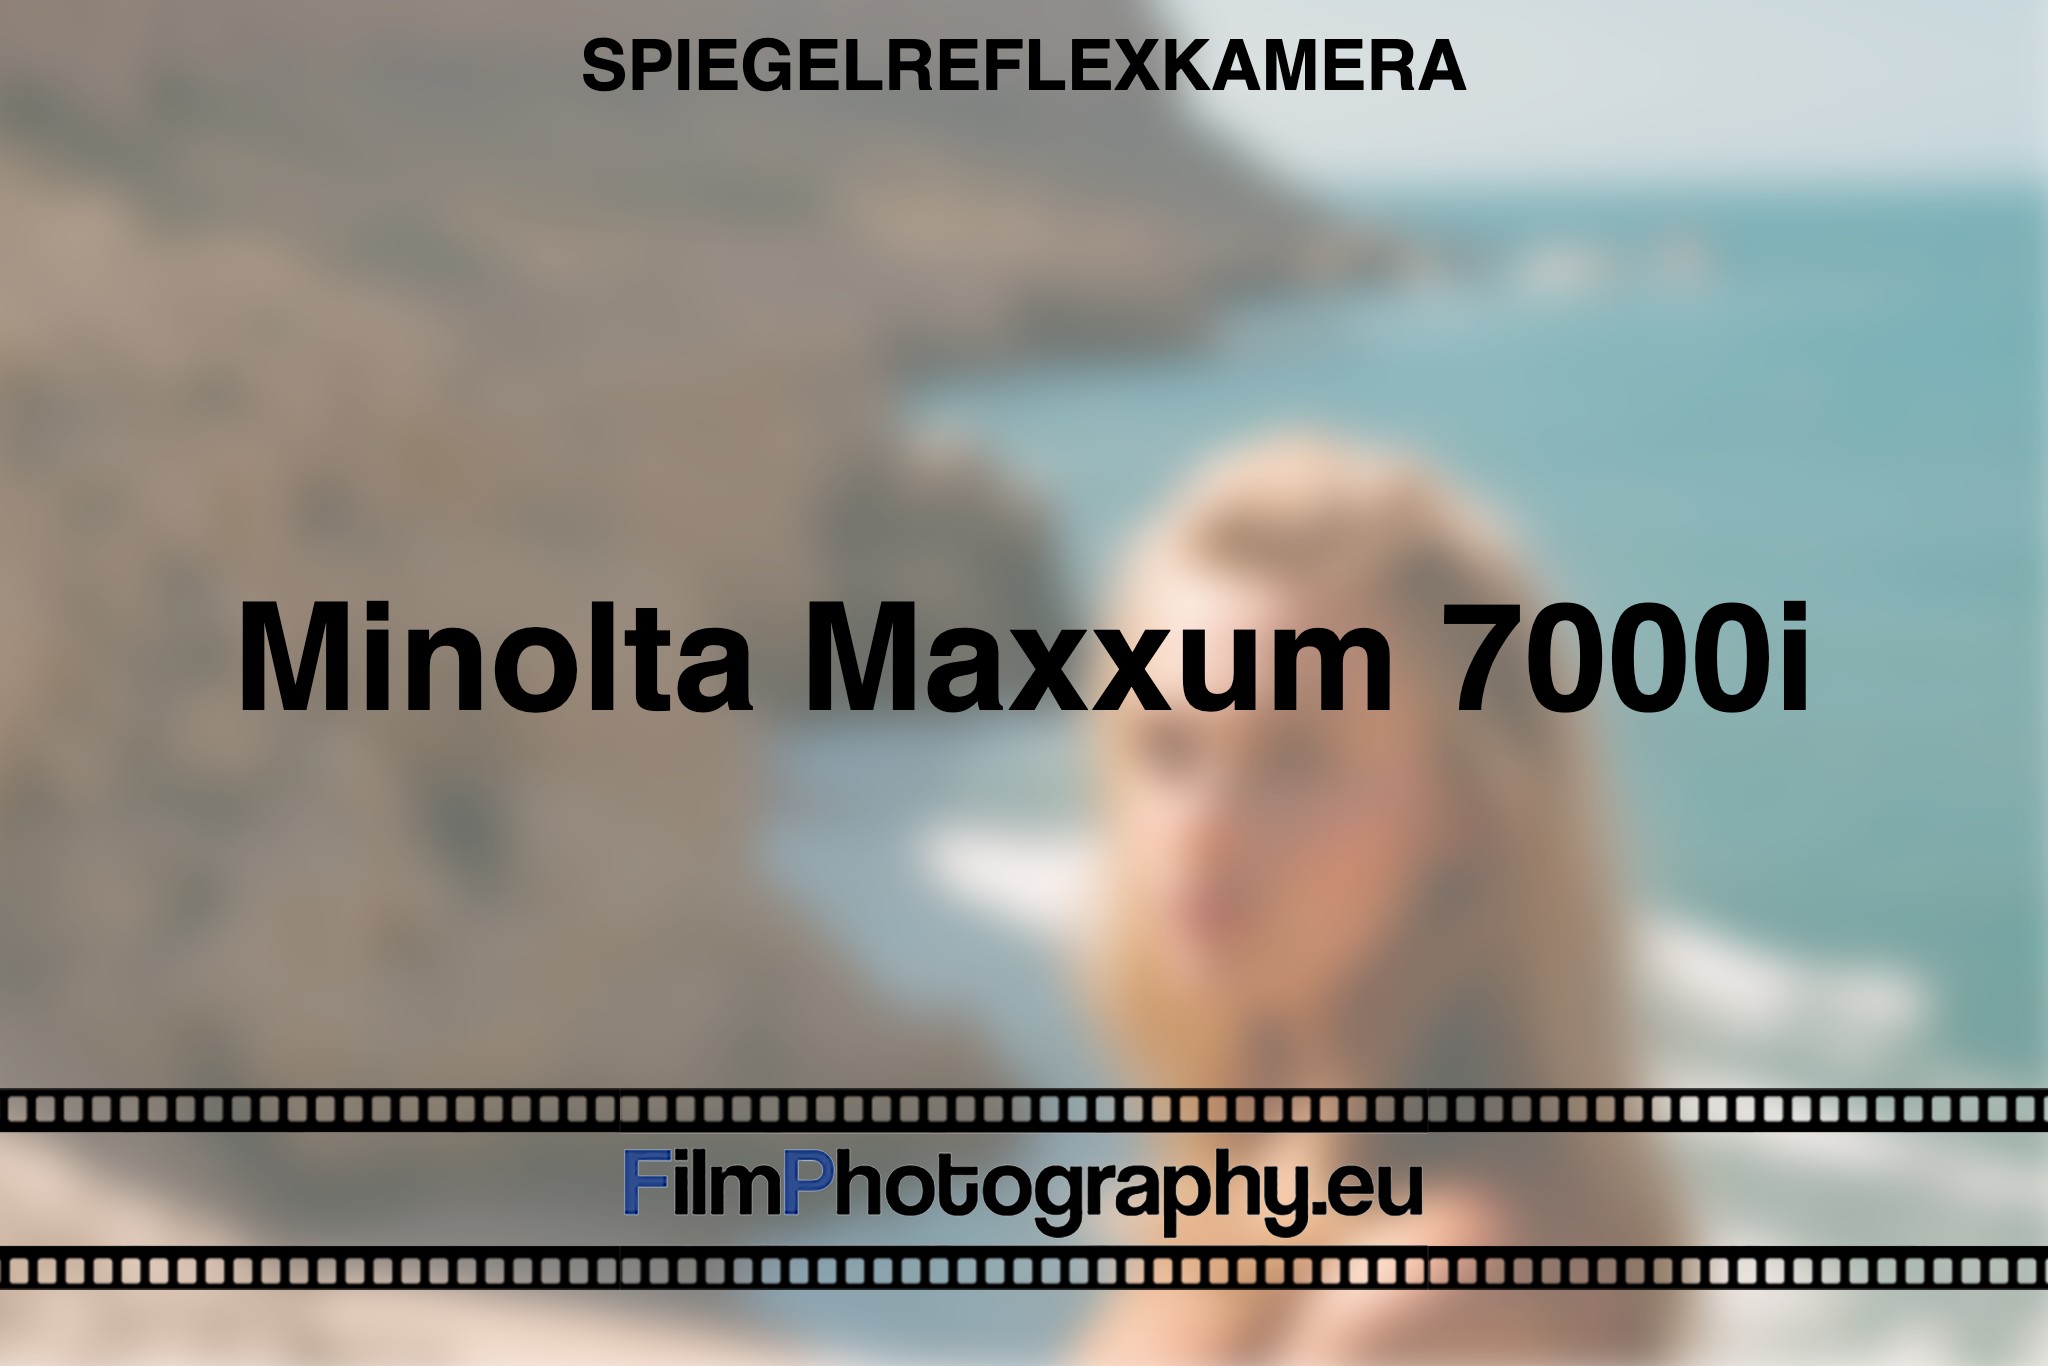 minolta-maxxum-7000i-spiegelreflexkamera-bnv